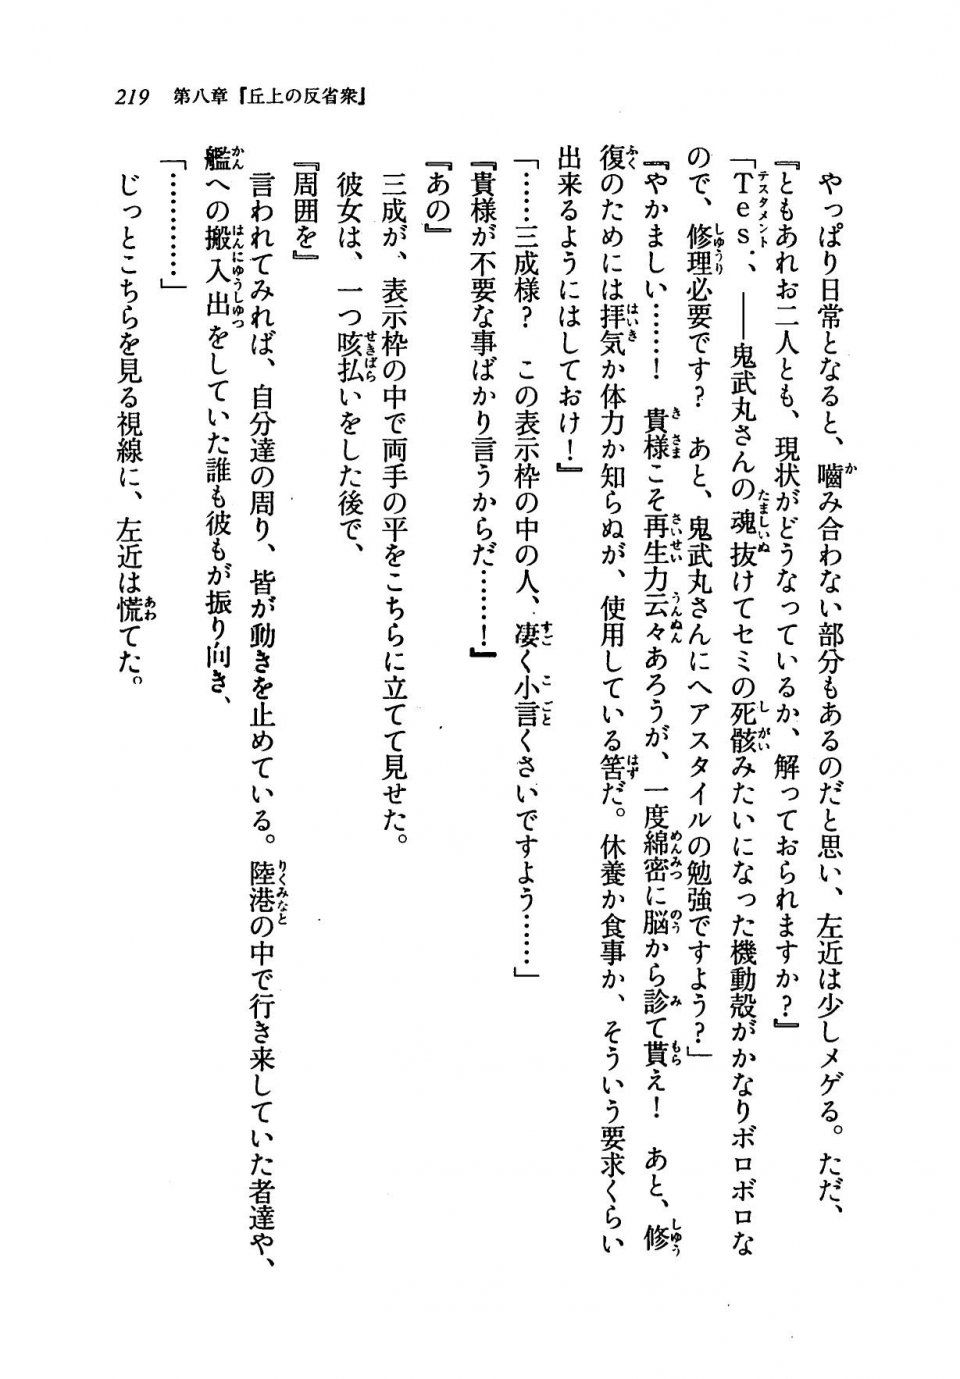 Kyoukai Senjou no Horizon LN Vol 19(8A) - Photo #219